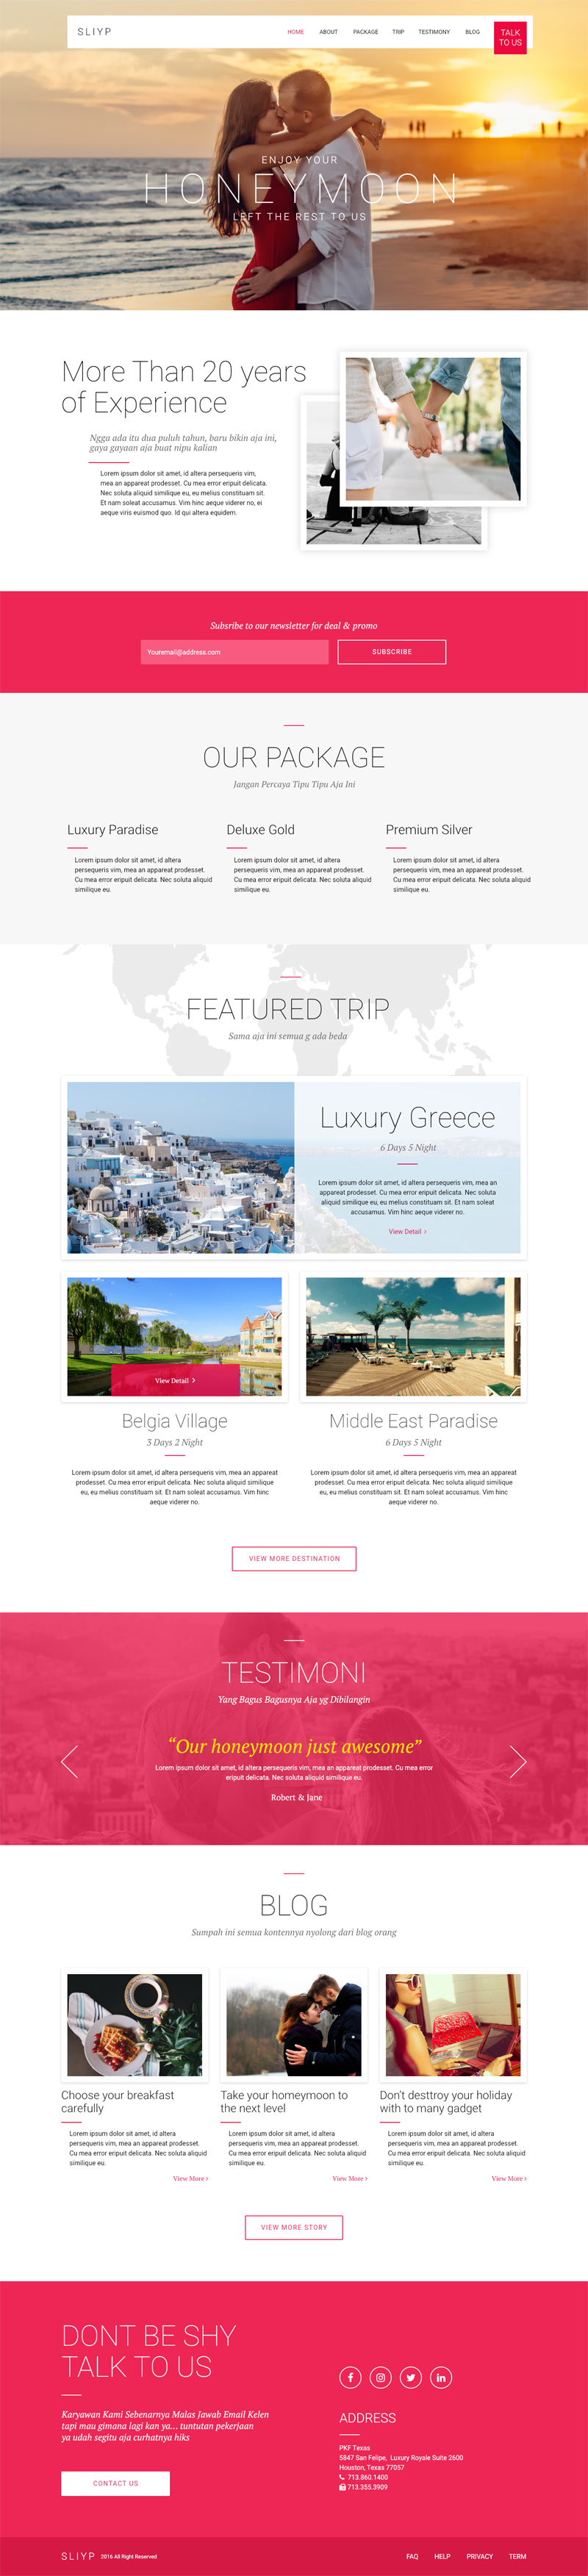 Целевая страница туристического агентства SLIYP, сделанная с Adobe XD